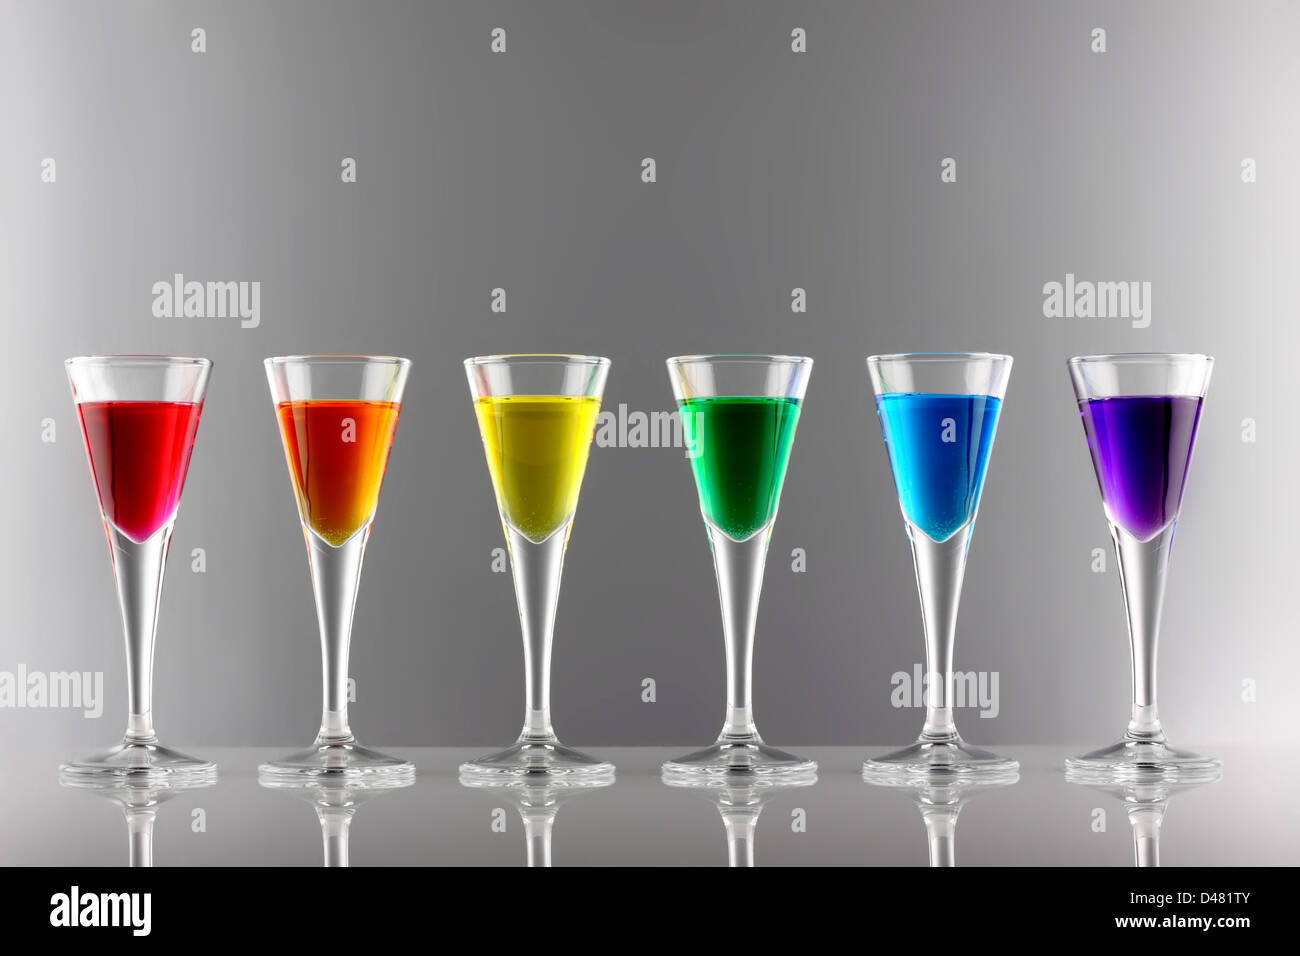 Una fila di bevande nei colori dell'arcobaleno Foto Stock